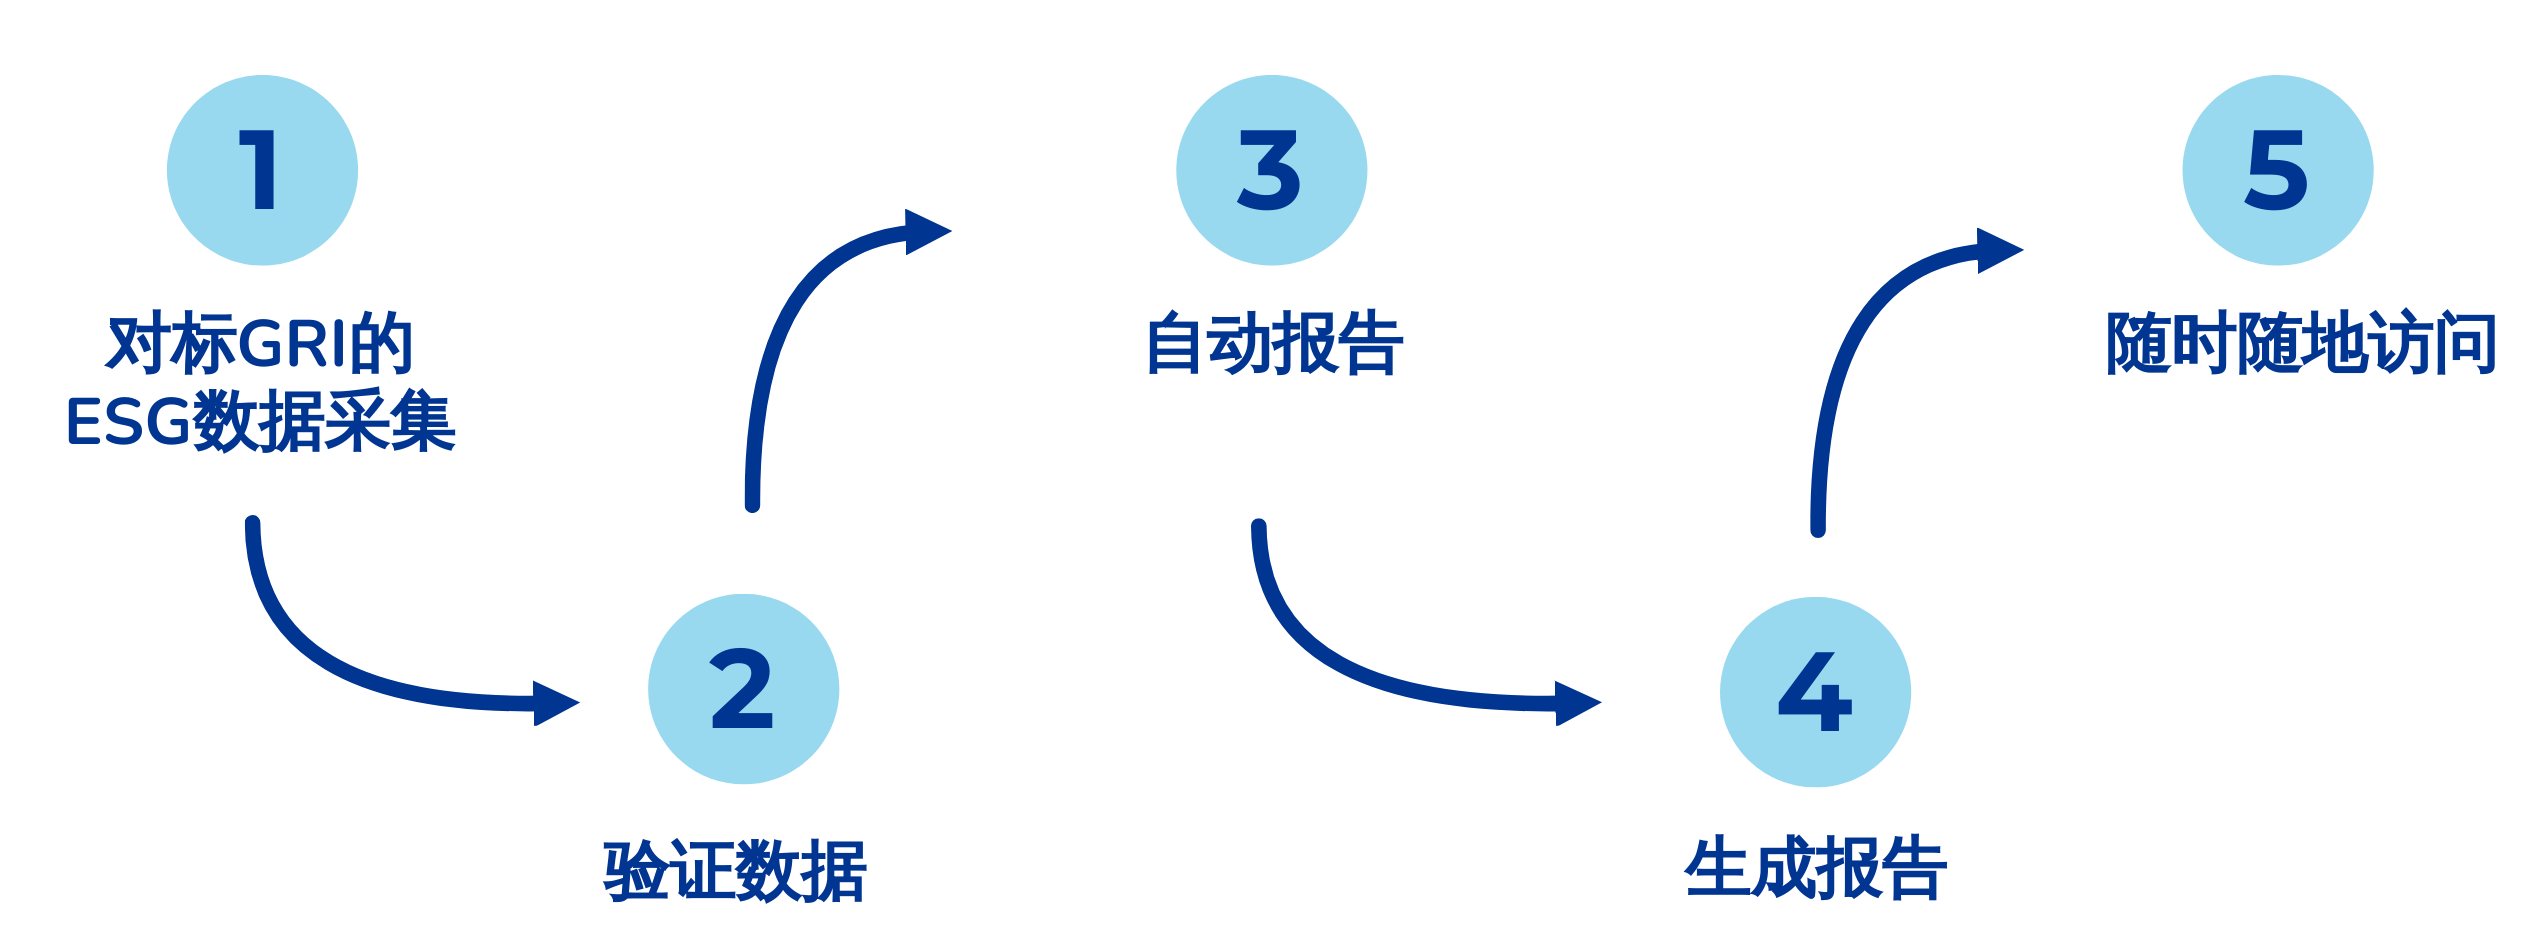 Synergi Life ESG - workflow - Chinese